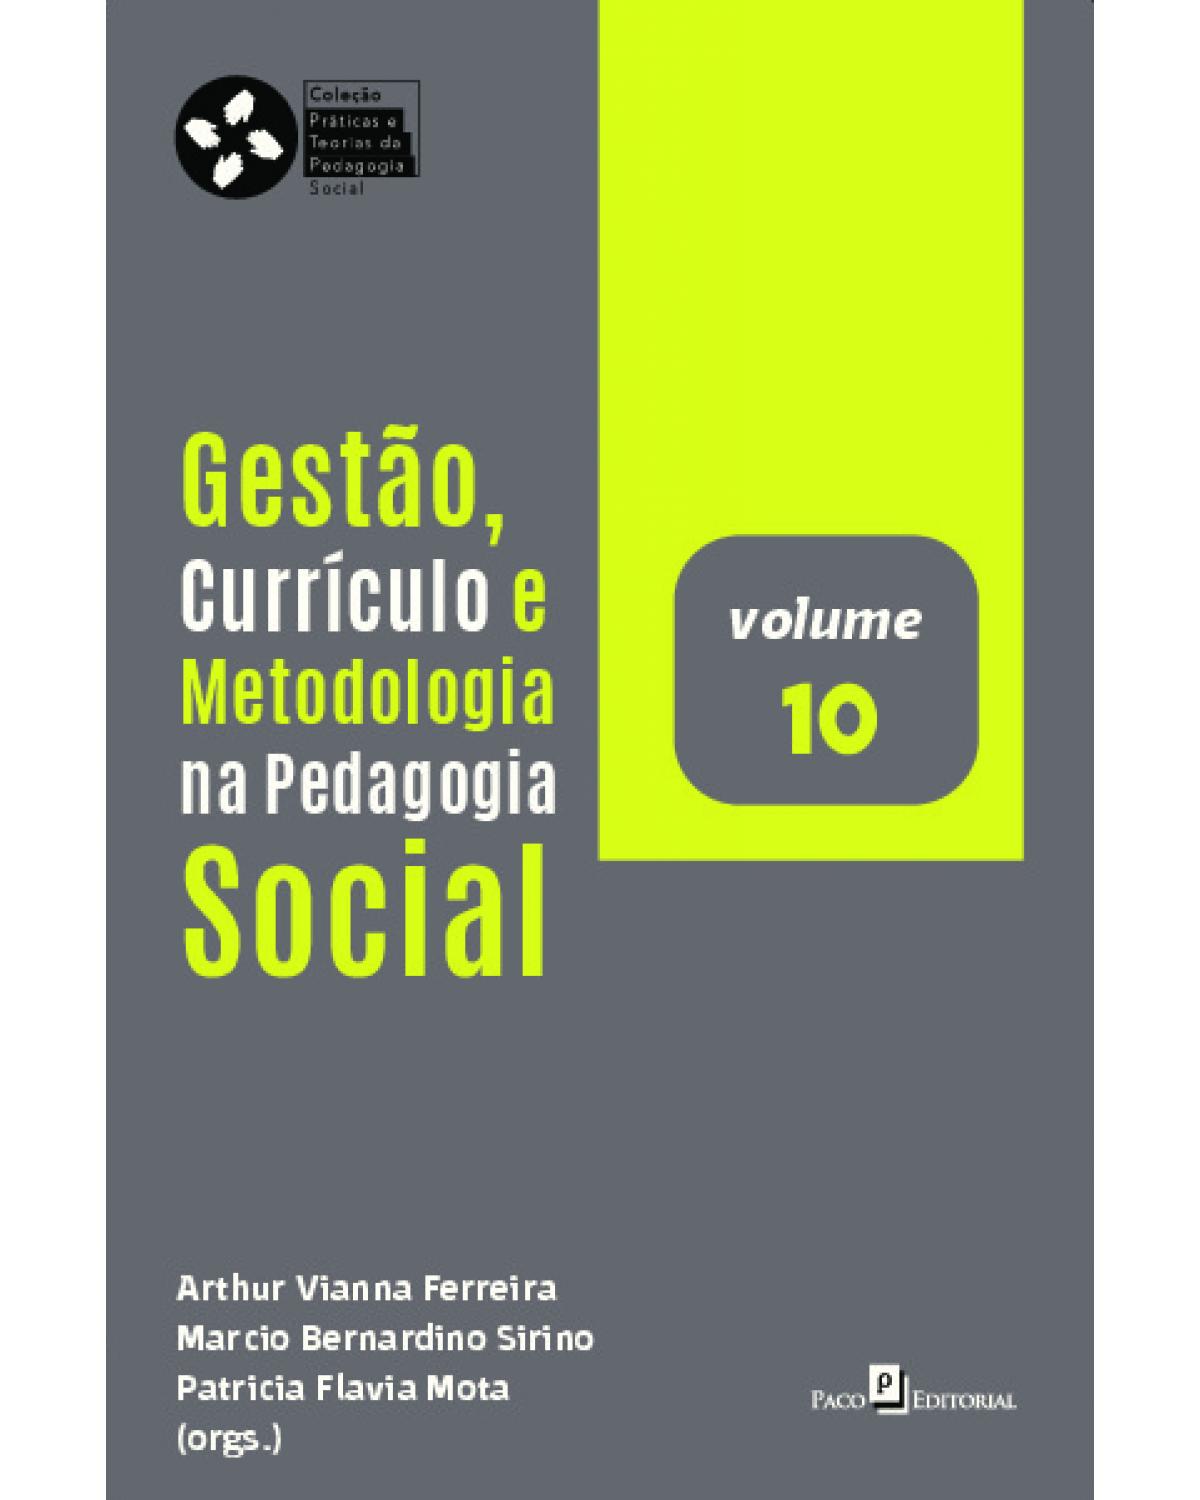 Gestão, currículo e metodologia na pedagogia social - Volume 10:  - 1ª Edição | 2021